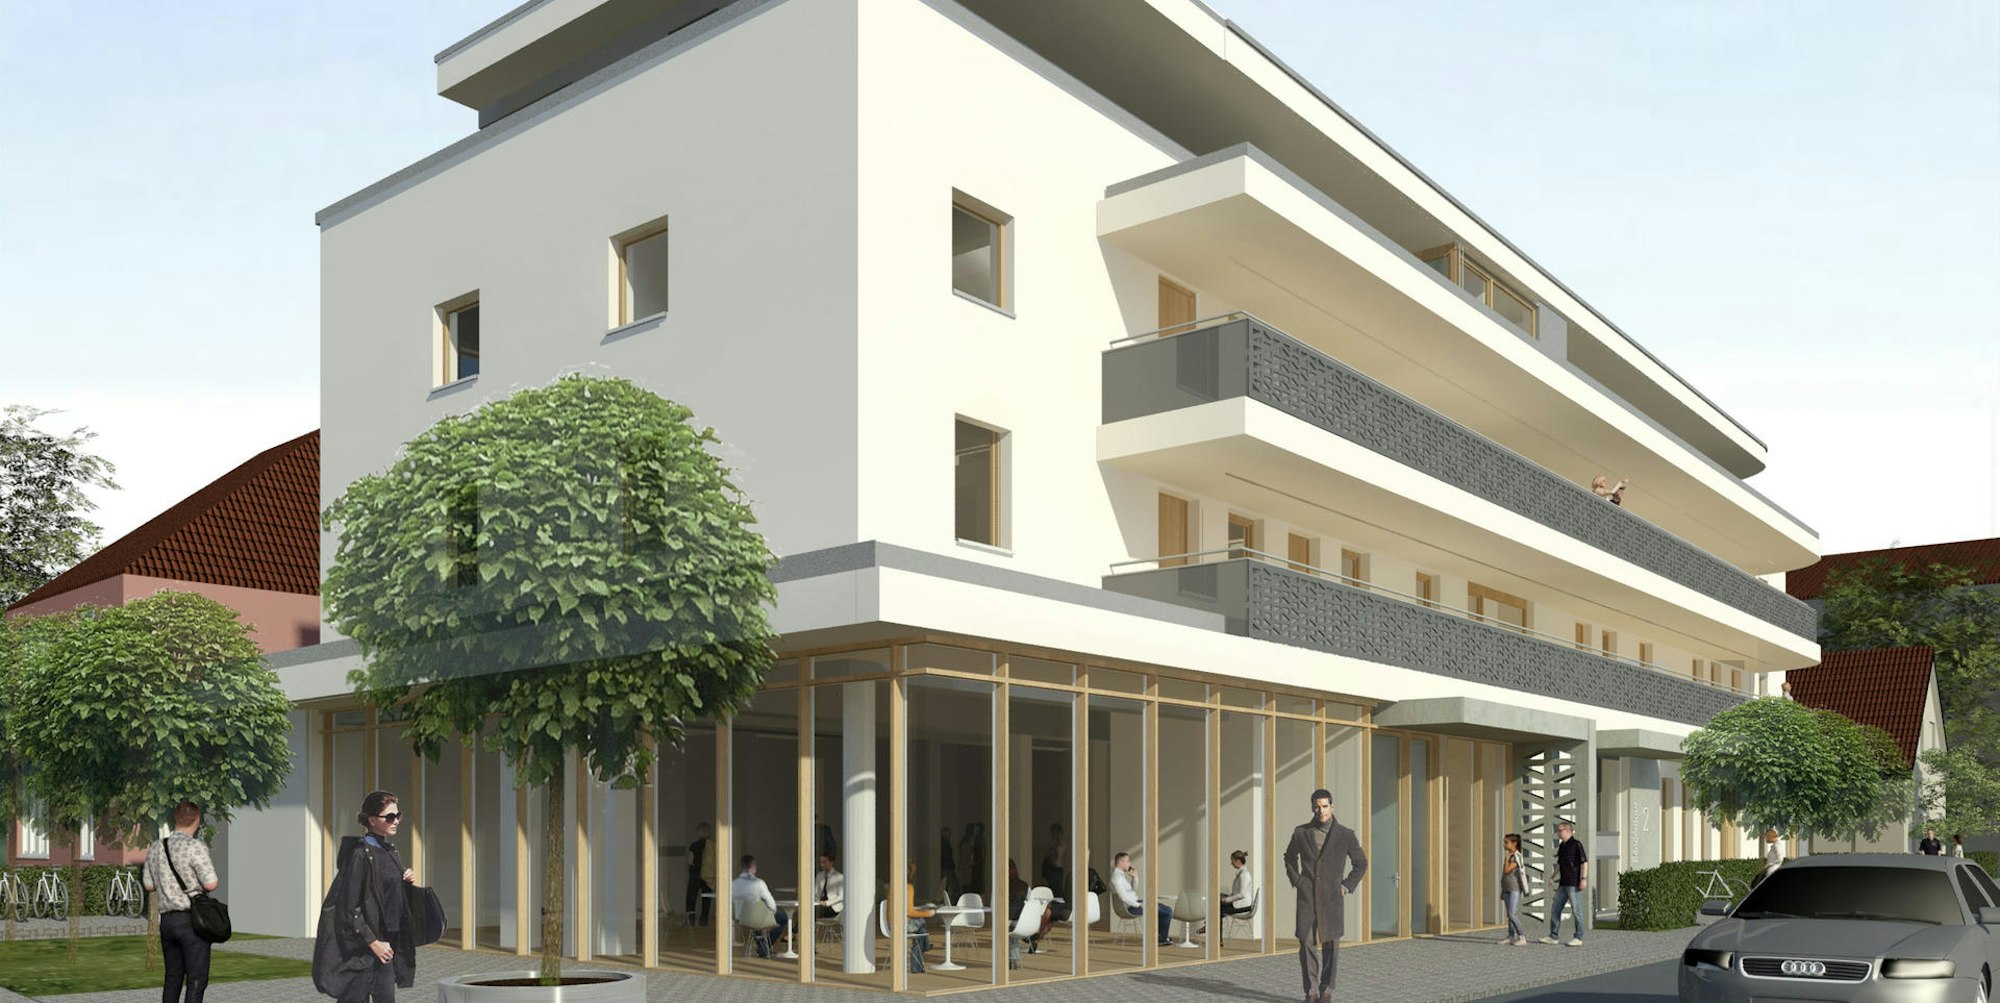 Entwurf des neuen Gemeindehauses an der Peter-von-Fliesteden-Straße